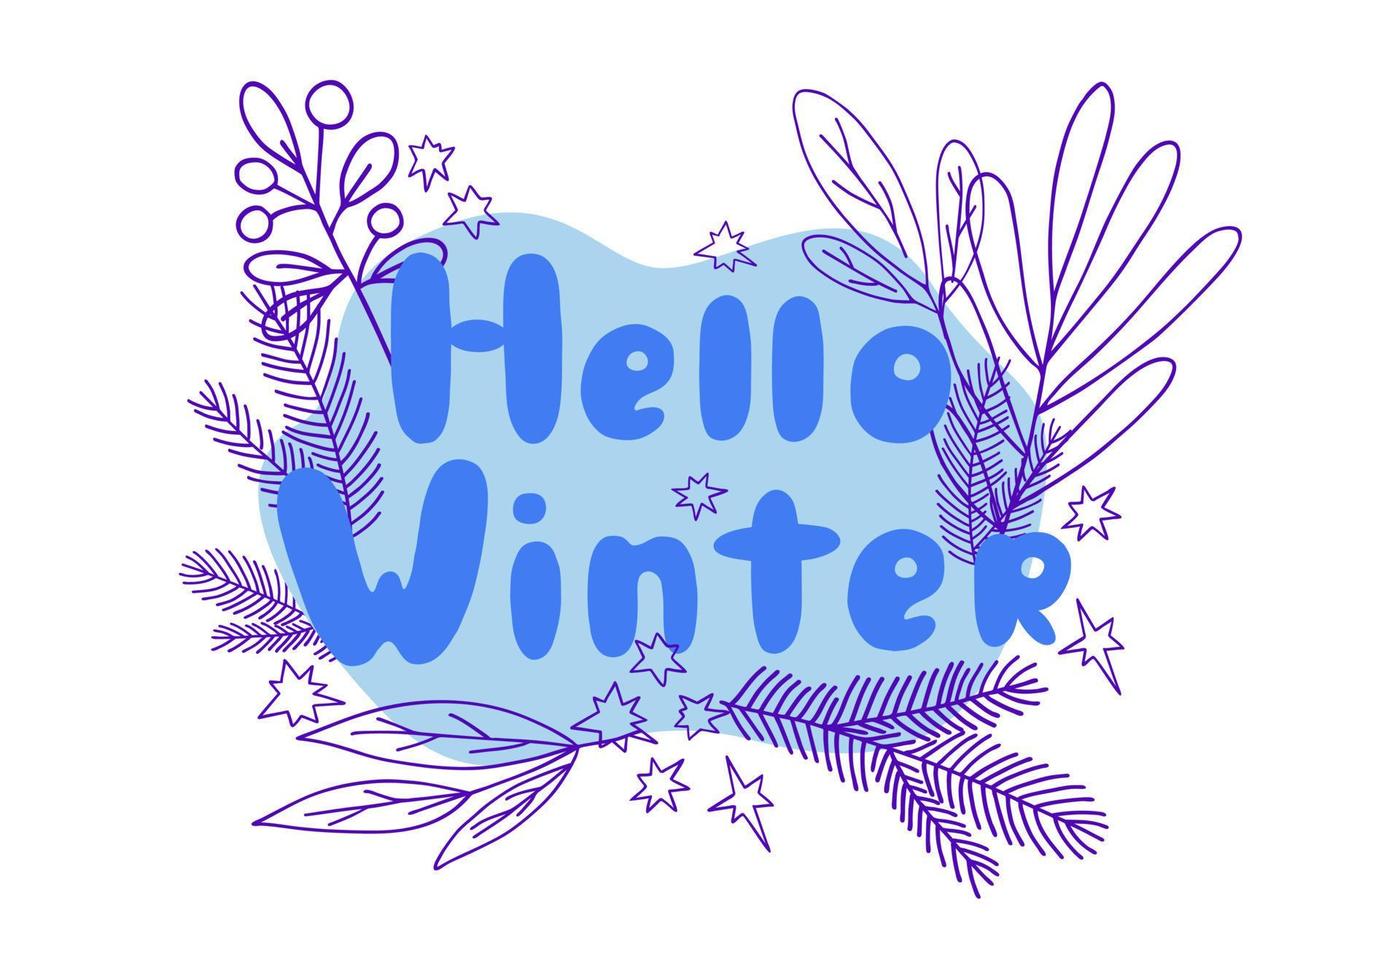 julblomkomposition med hej vinterfras i enkel handritad tecknad stil för gratulationskort, inbjudningar, bannervektorillustration vektor